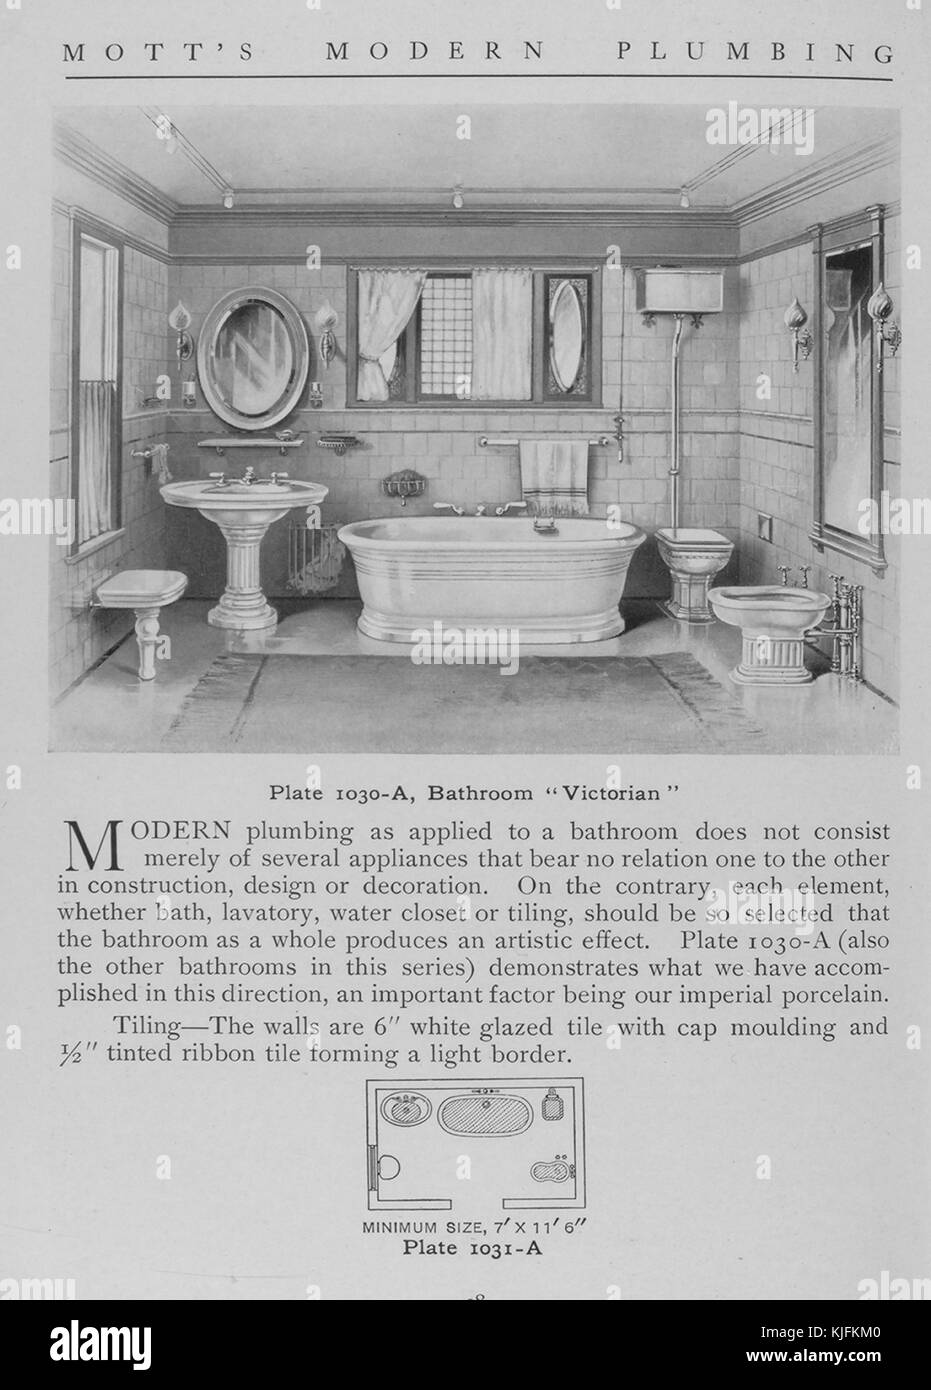 Salle de bains, de style victorien, 1911. à partir de la bibliothèque publique de New York. Cette plaque est de motts plomberie moderne, un catalogue illustrant différents styles d'accessoires de salle de bain. Banque D'Images